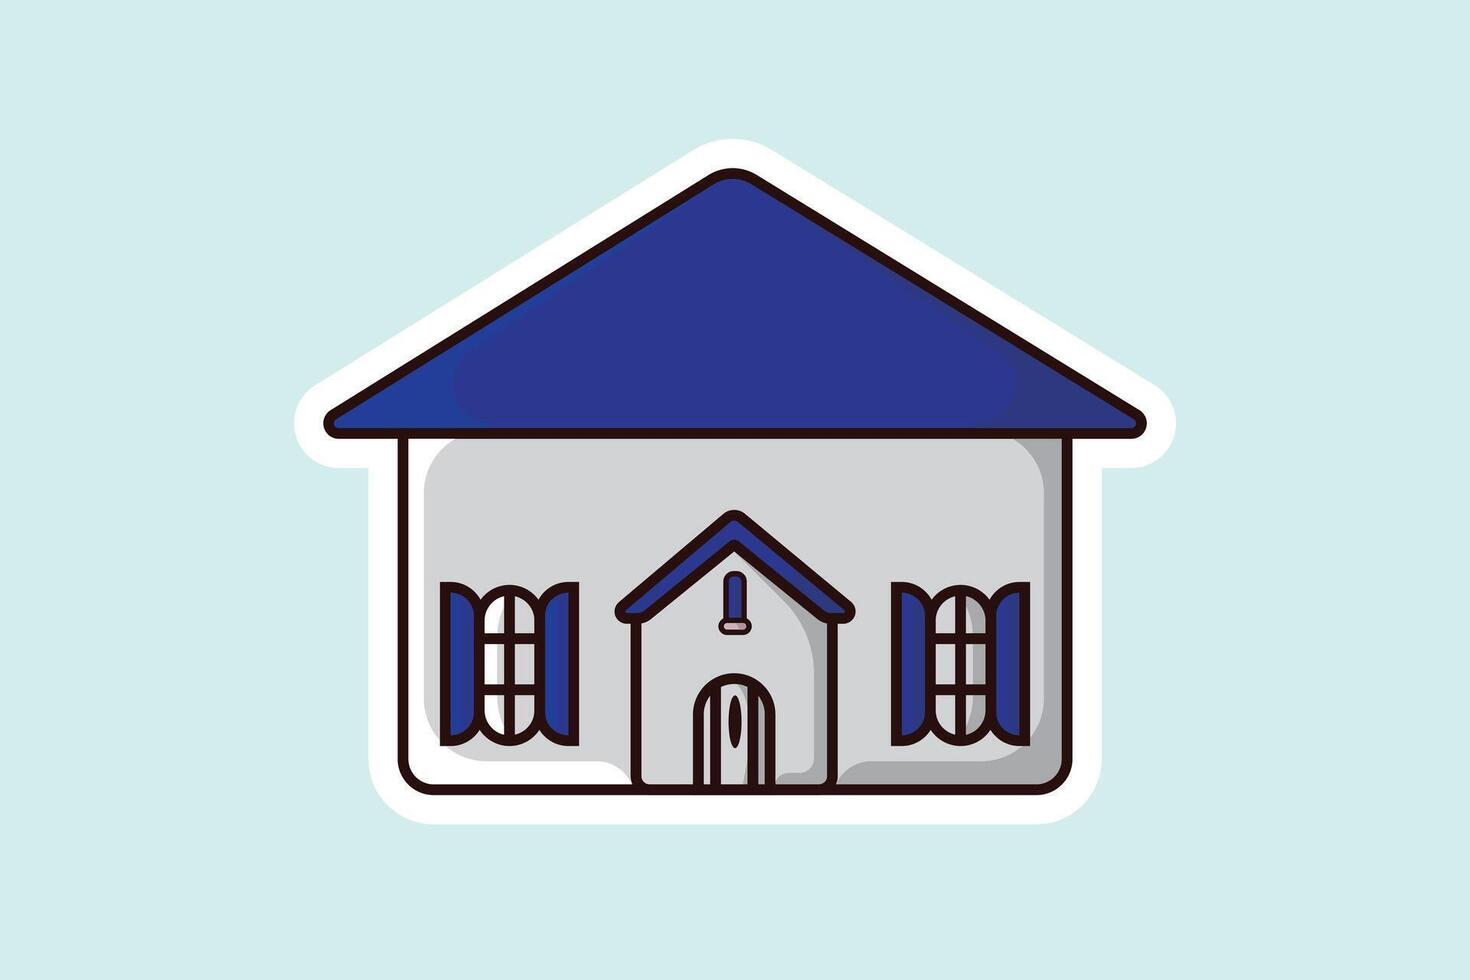 huis gebouw sticker vector illustratie. gebouw en mijlpaal voorwerp icoon concept. mooi minimalistische huis voorkant visie met dak sticker ontwerp logo met schaduw.